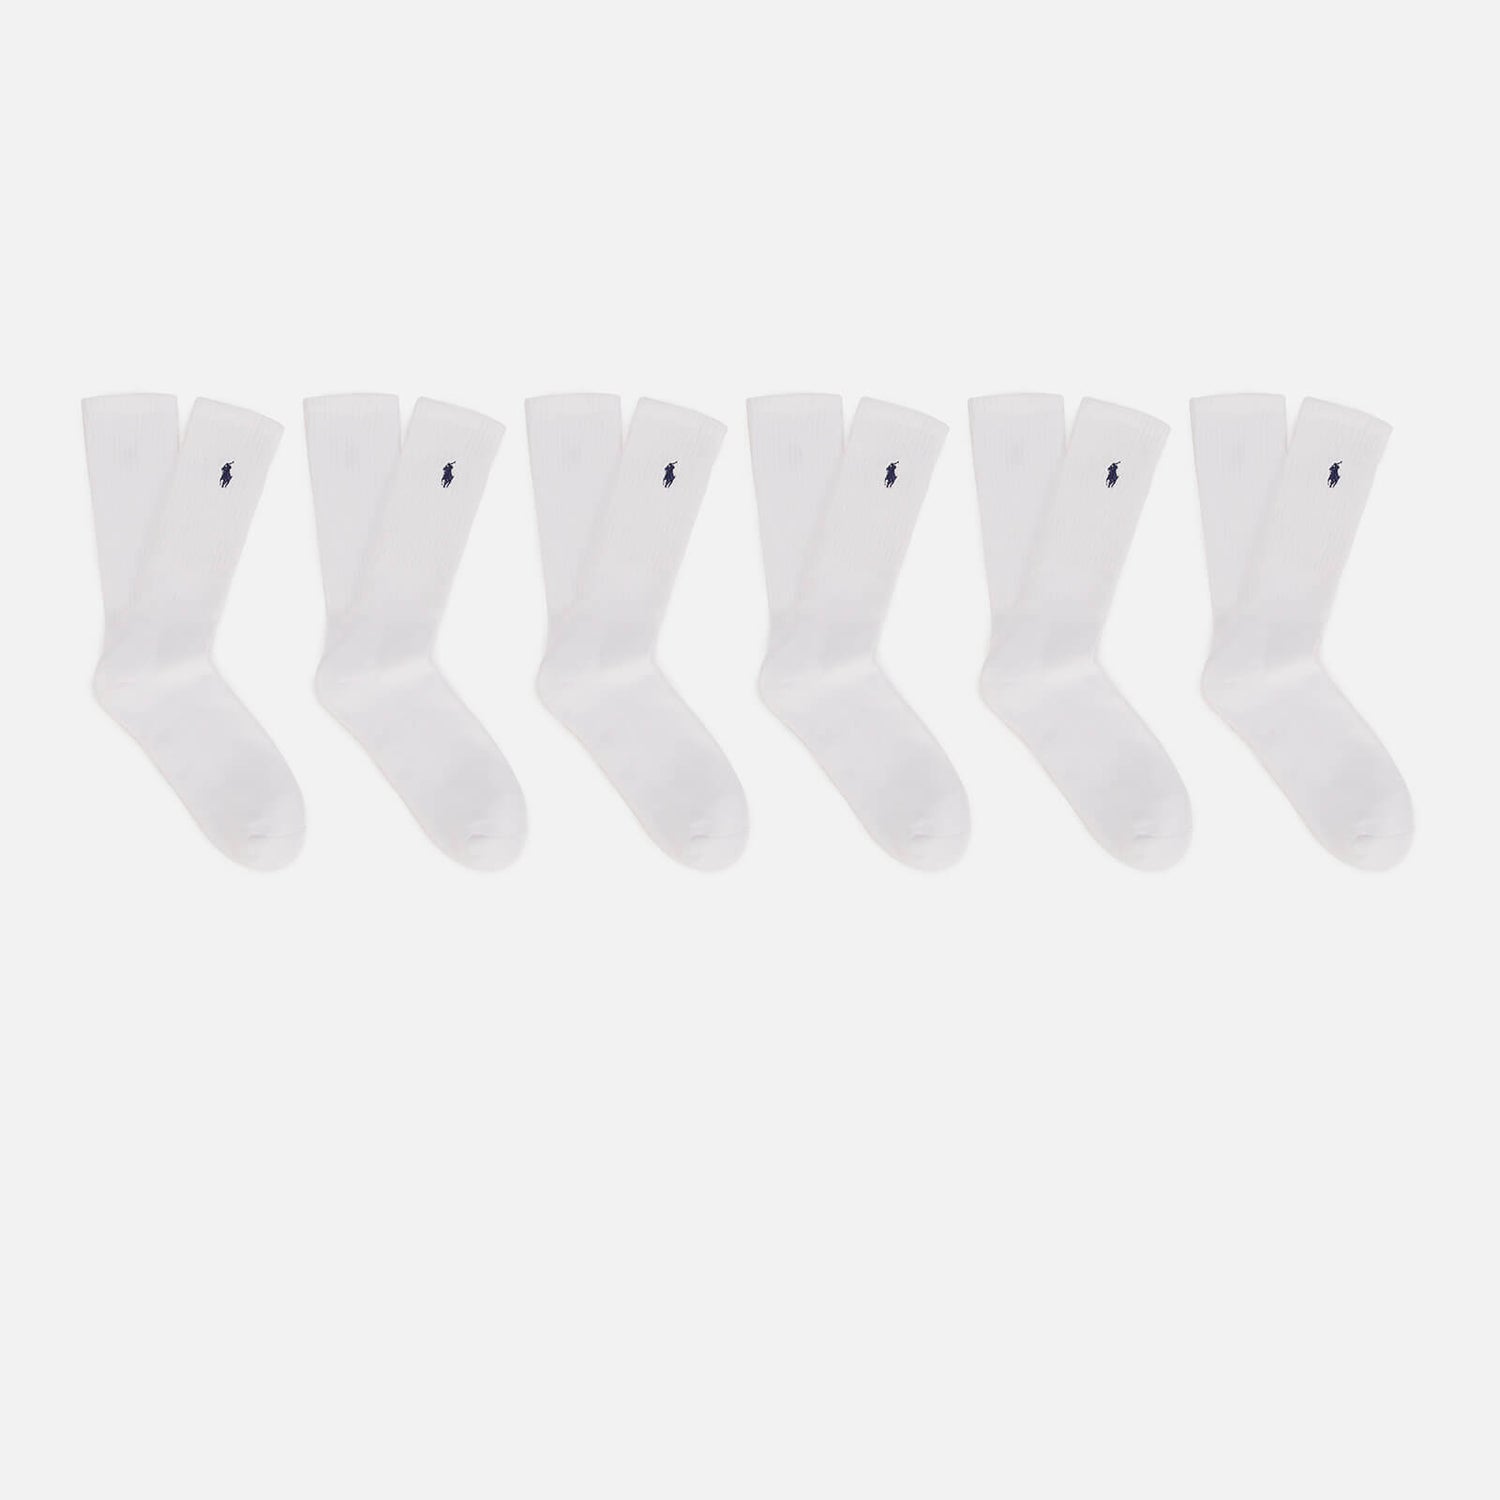 Polo Ralph Lauren Men's 6 Pack Polo Player Socks - White